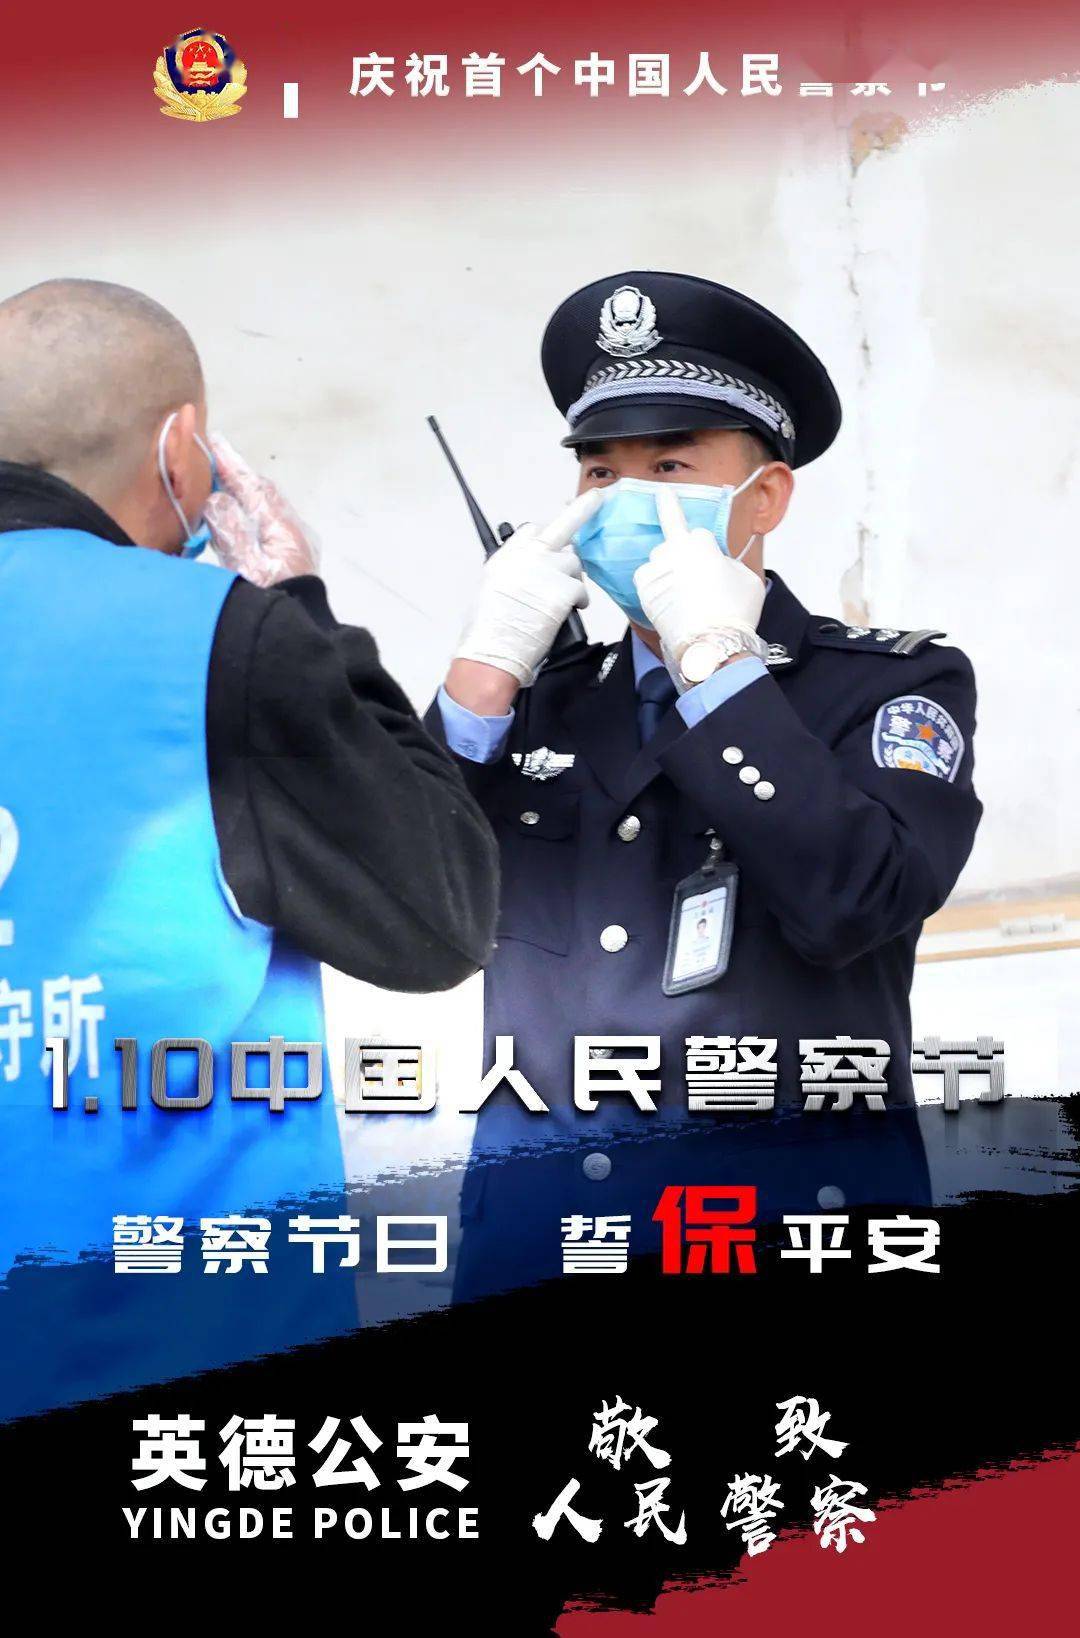 110中国人民警察节英德公安高清海报等你收藏